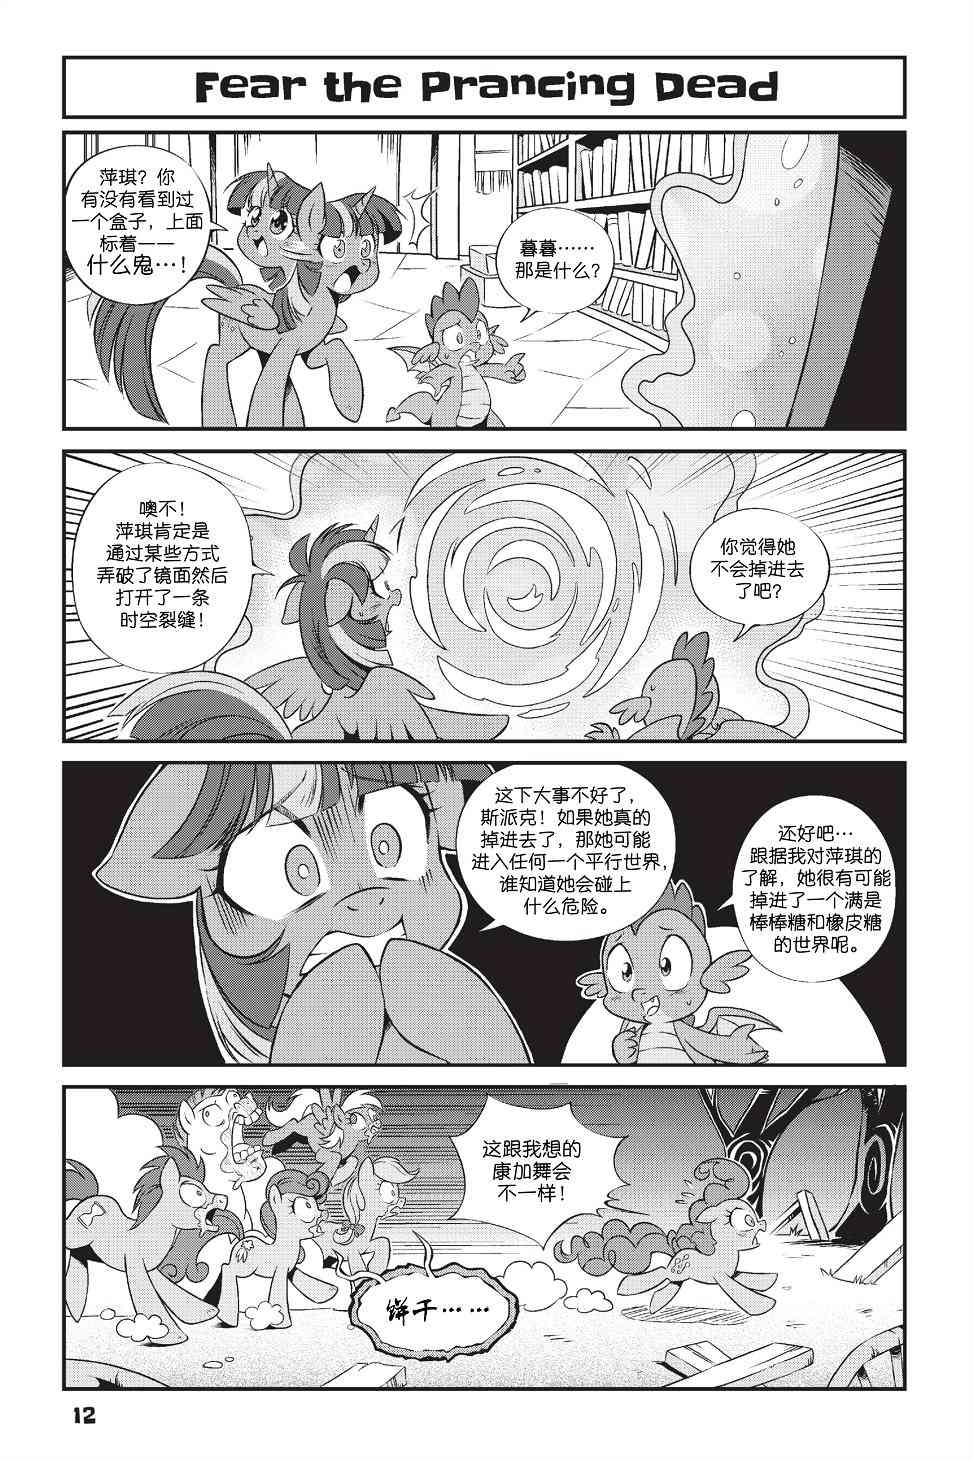 彩虹小馬G4：友情就是魔法 - 新日版漫畫第01部第01話 - 1